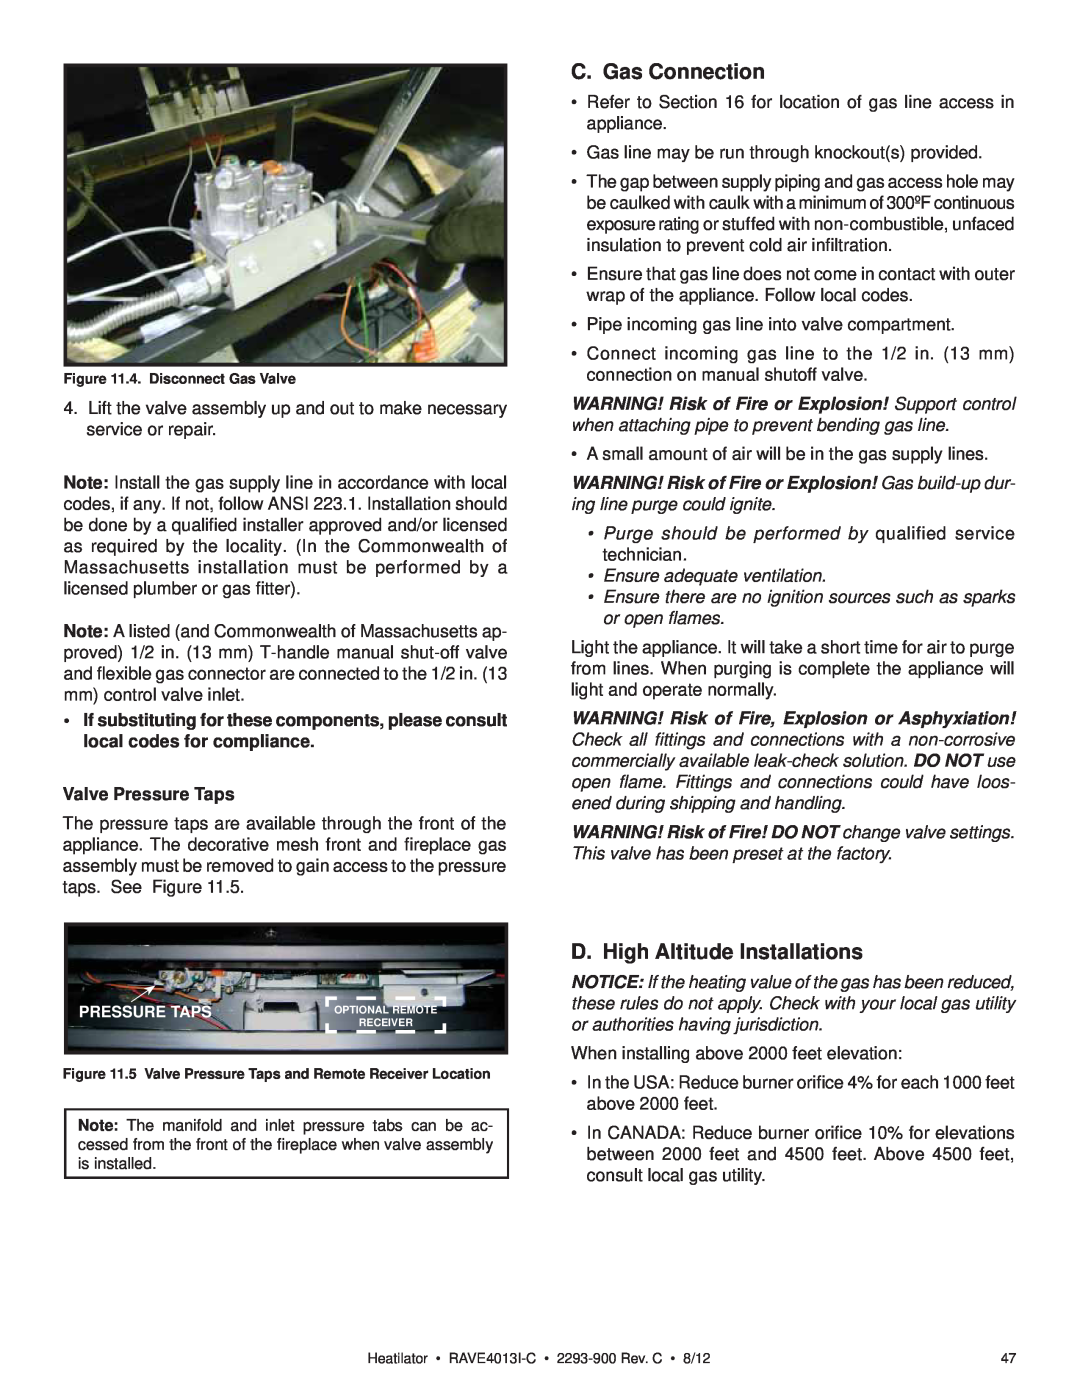 Heatiator Rave4013i-c C. Gas Connection, D. High Altitude Installations, Valve Pressure Taps, Ensure adequate ventilation 